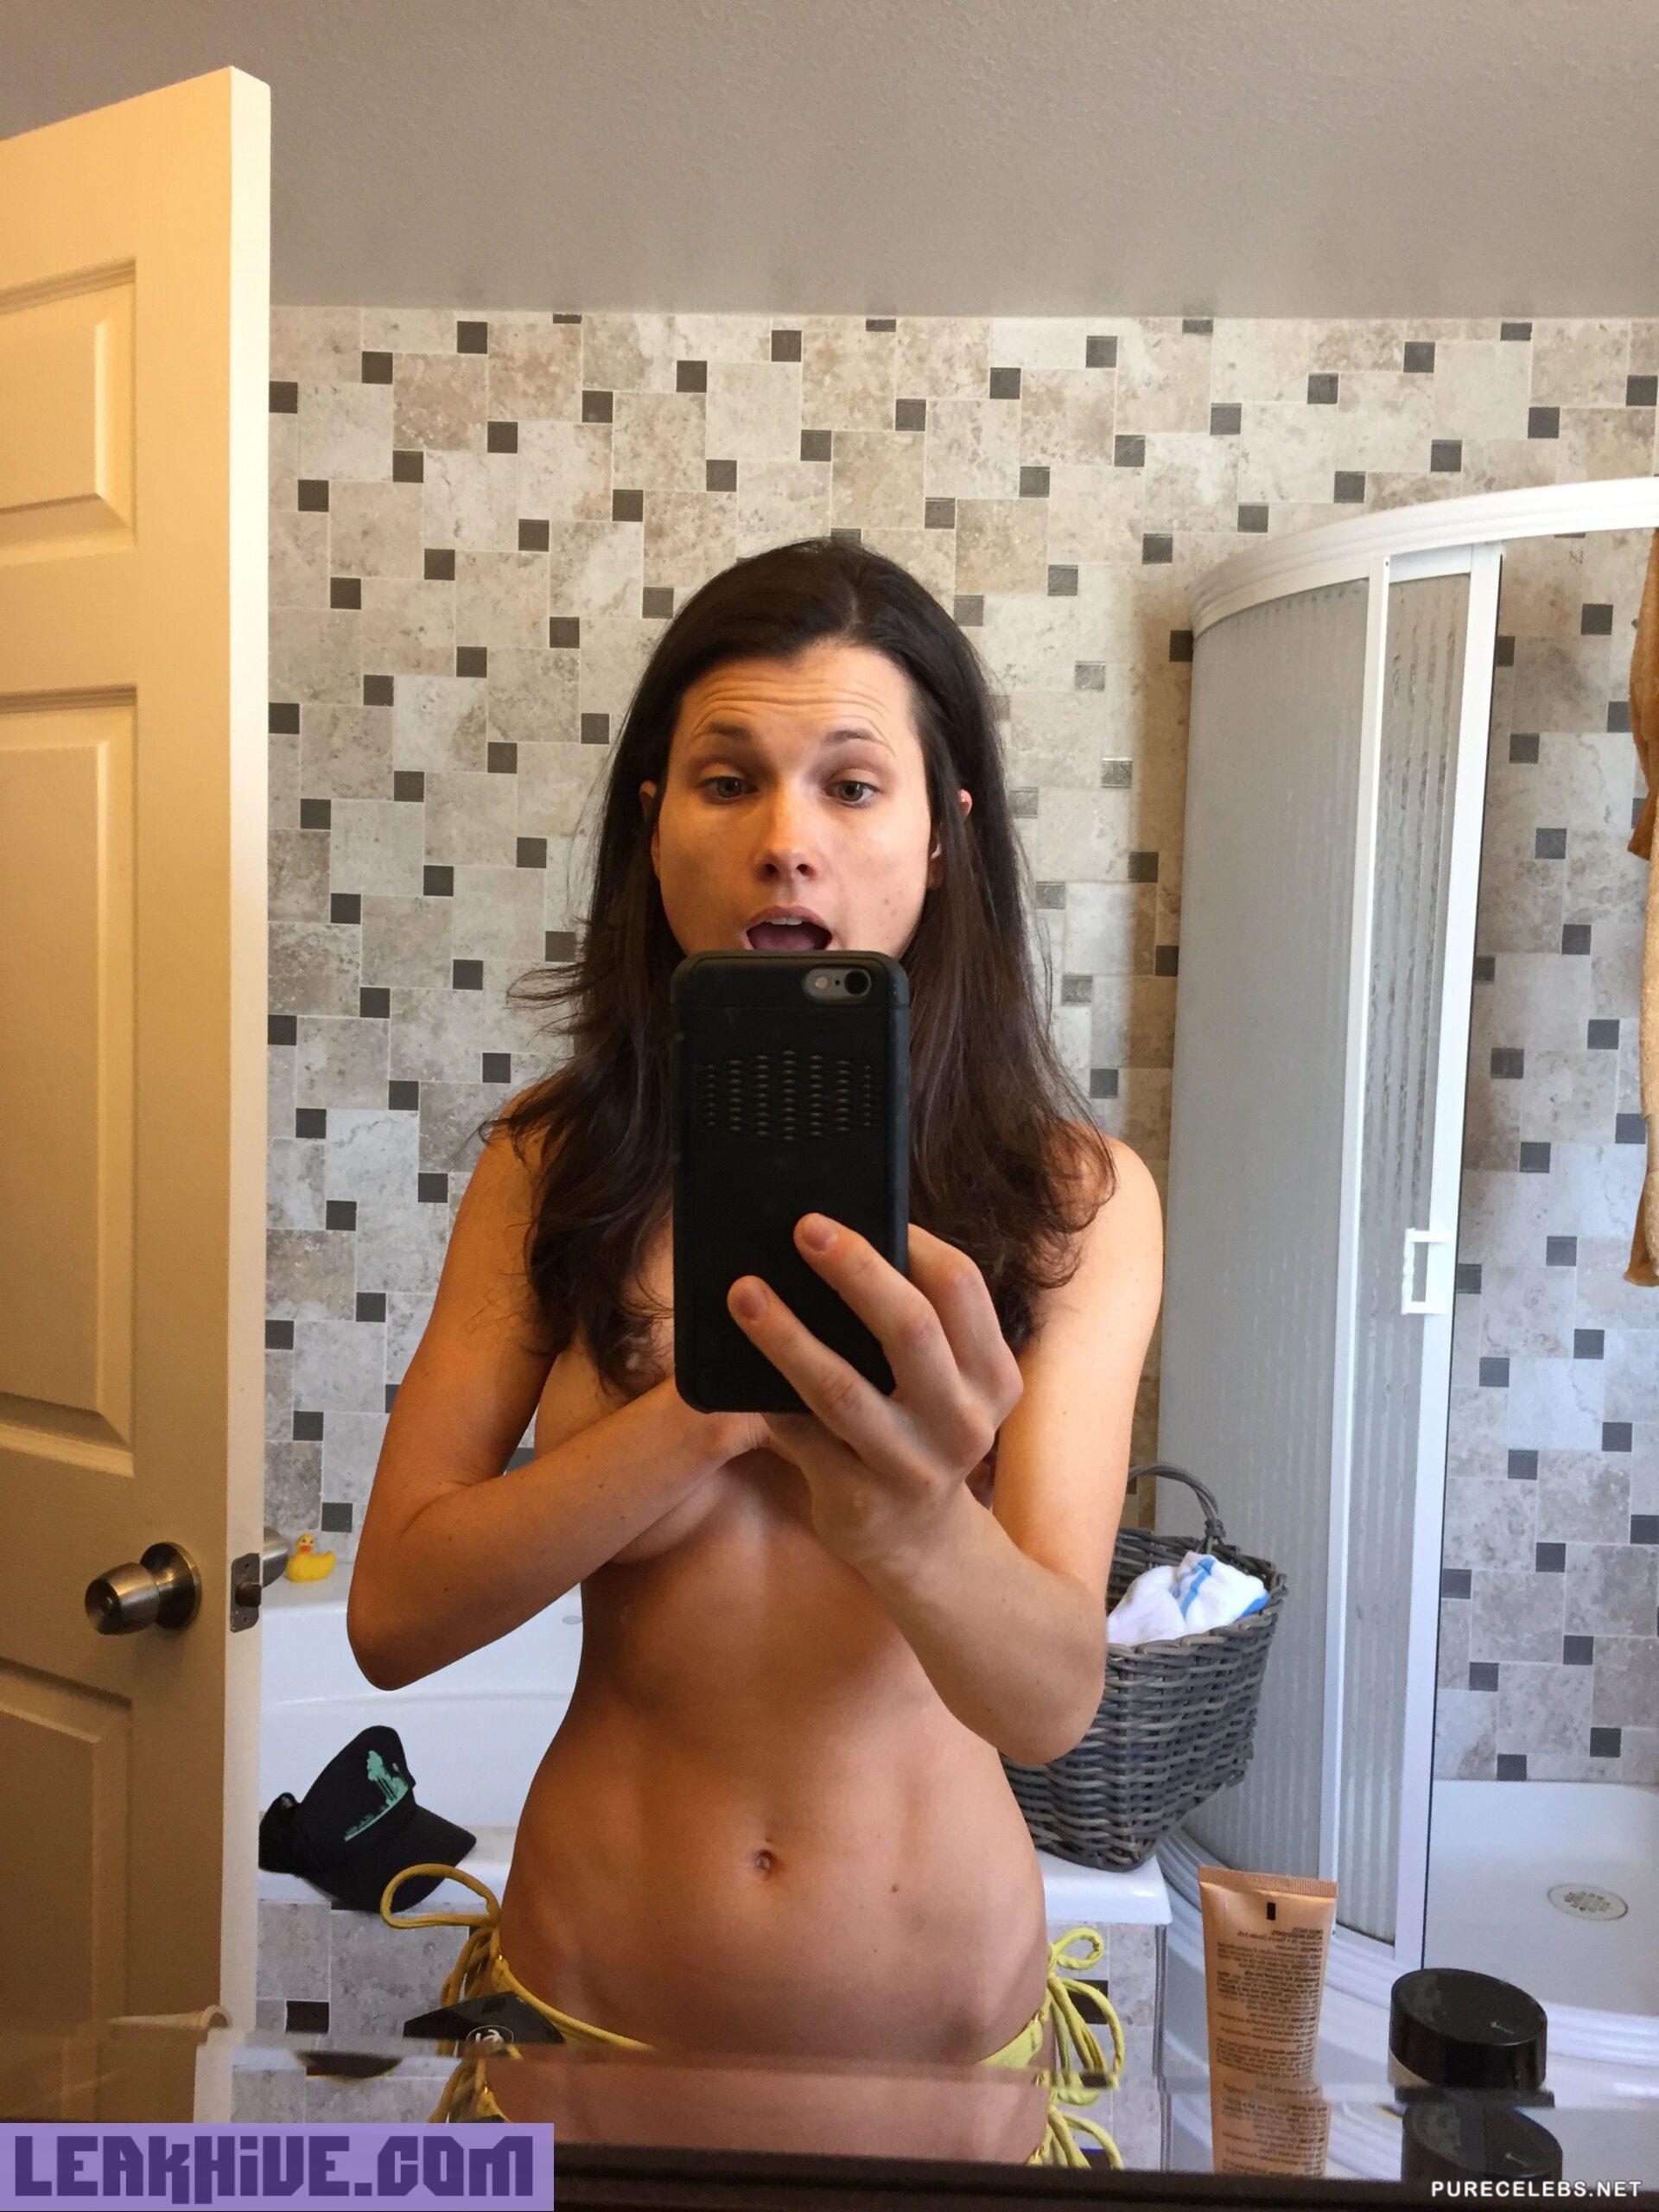 Leaked Nikki Reed Nude Pregnant Selfie